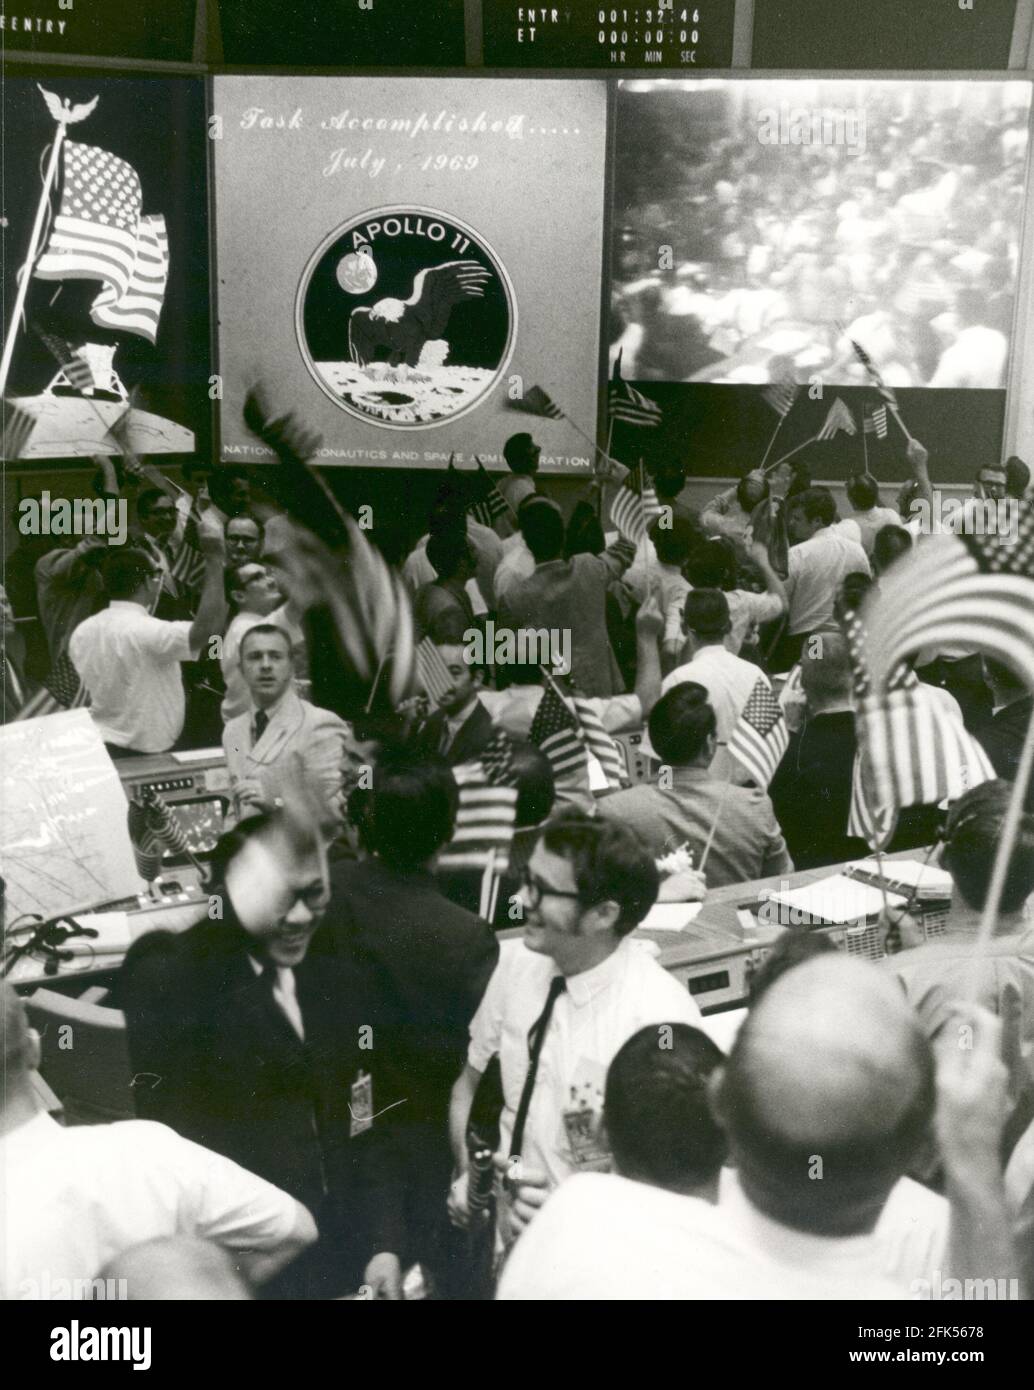 Houston, TX - (FICHIER) -- vue d'ensemble de la salle de contrôle des opérations de la mission dans le Centre de contrôle de la mission, bâtiment 30, centre spatial habité, montrant les contrôleurs de vol célébrant la conclusion réussie de la mission d'atterrissage lunaire Apollo 11 le 24 juillet 1969.Credit: NASA via CNP /MediaPunch Banque D'Images